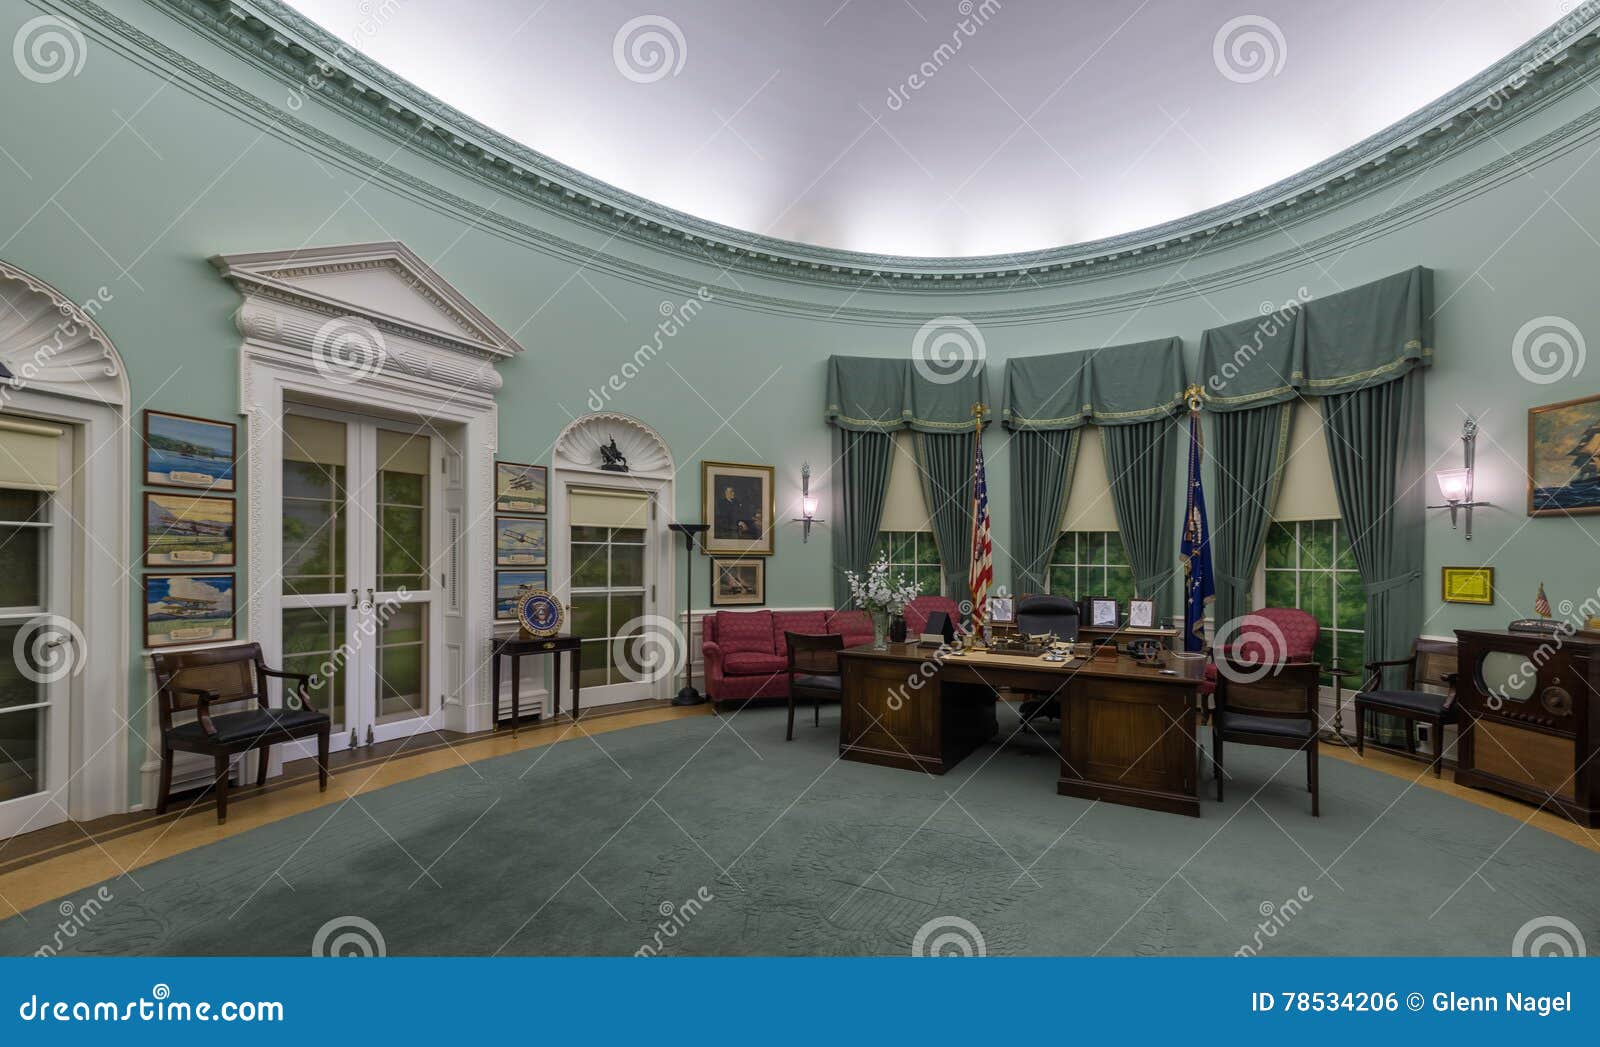 President Joe Biden's Oval Office: A Look Inside